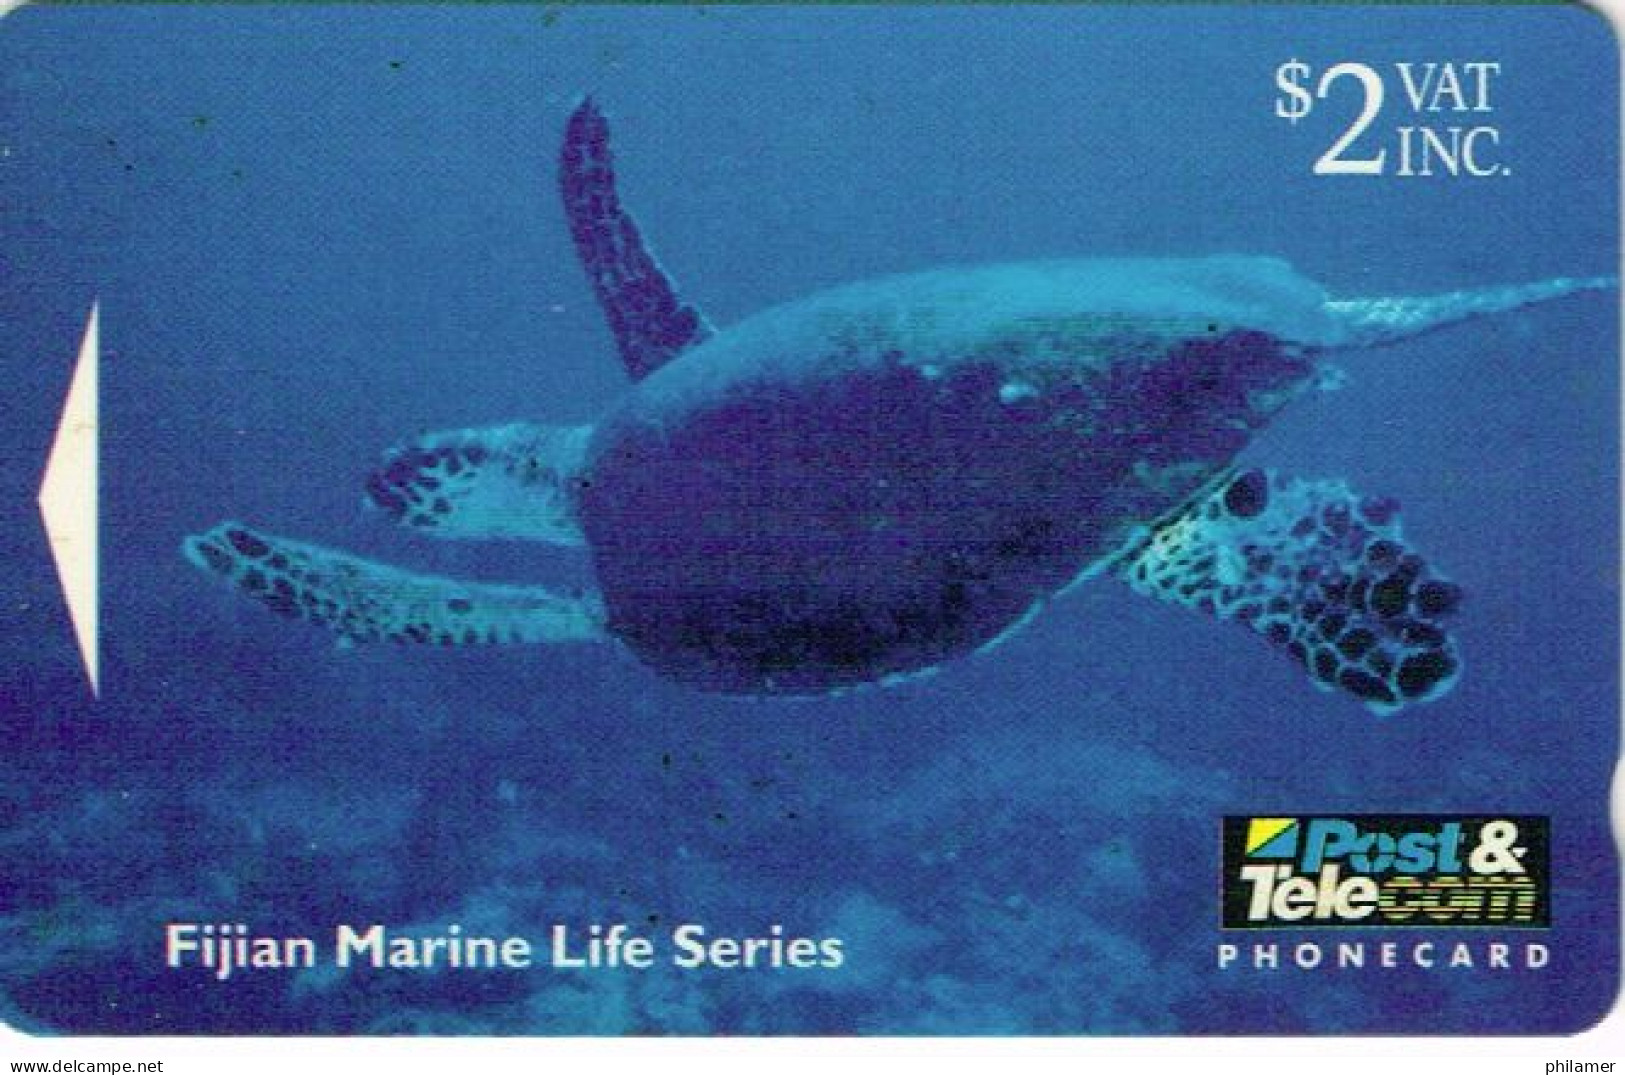 Fidji Fiji TELECARTE PHONECARD Telecom Marine Serie Tortue Turtle Hawkesbill Recif Reef 1995 2 Dollars Ut BE - Fidji